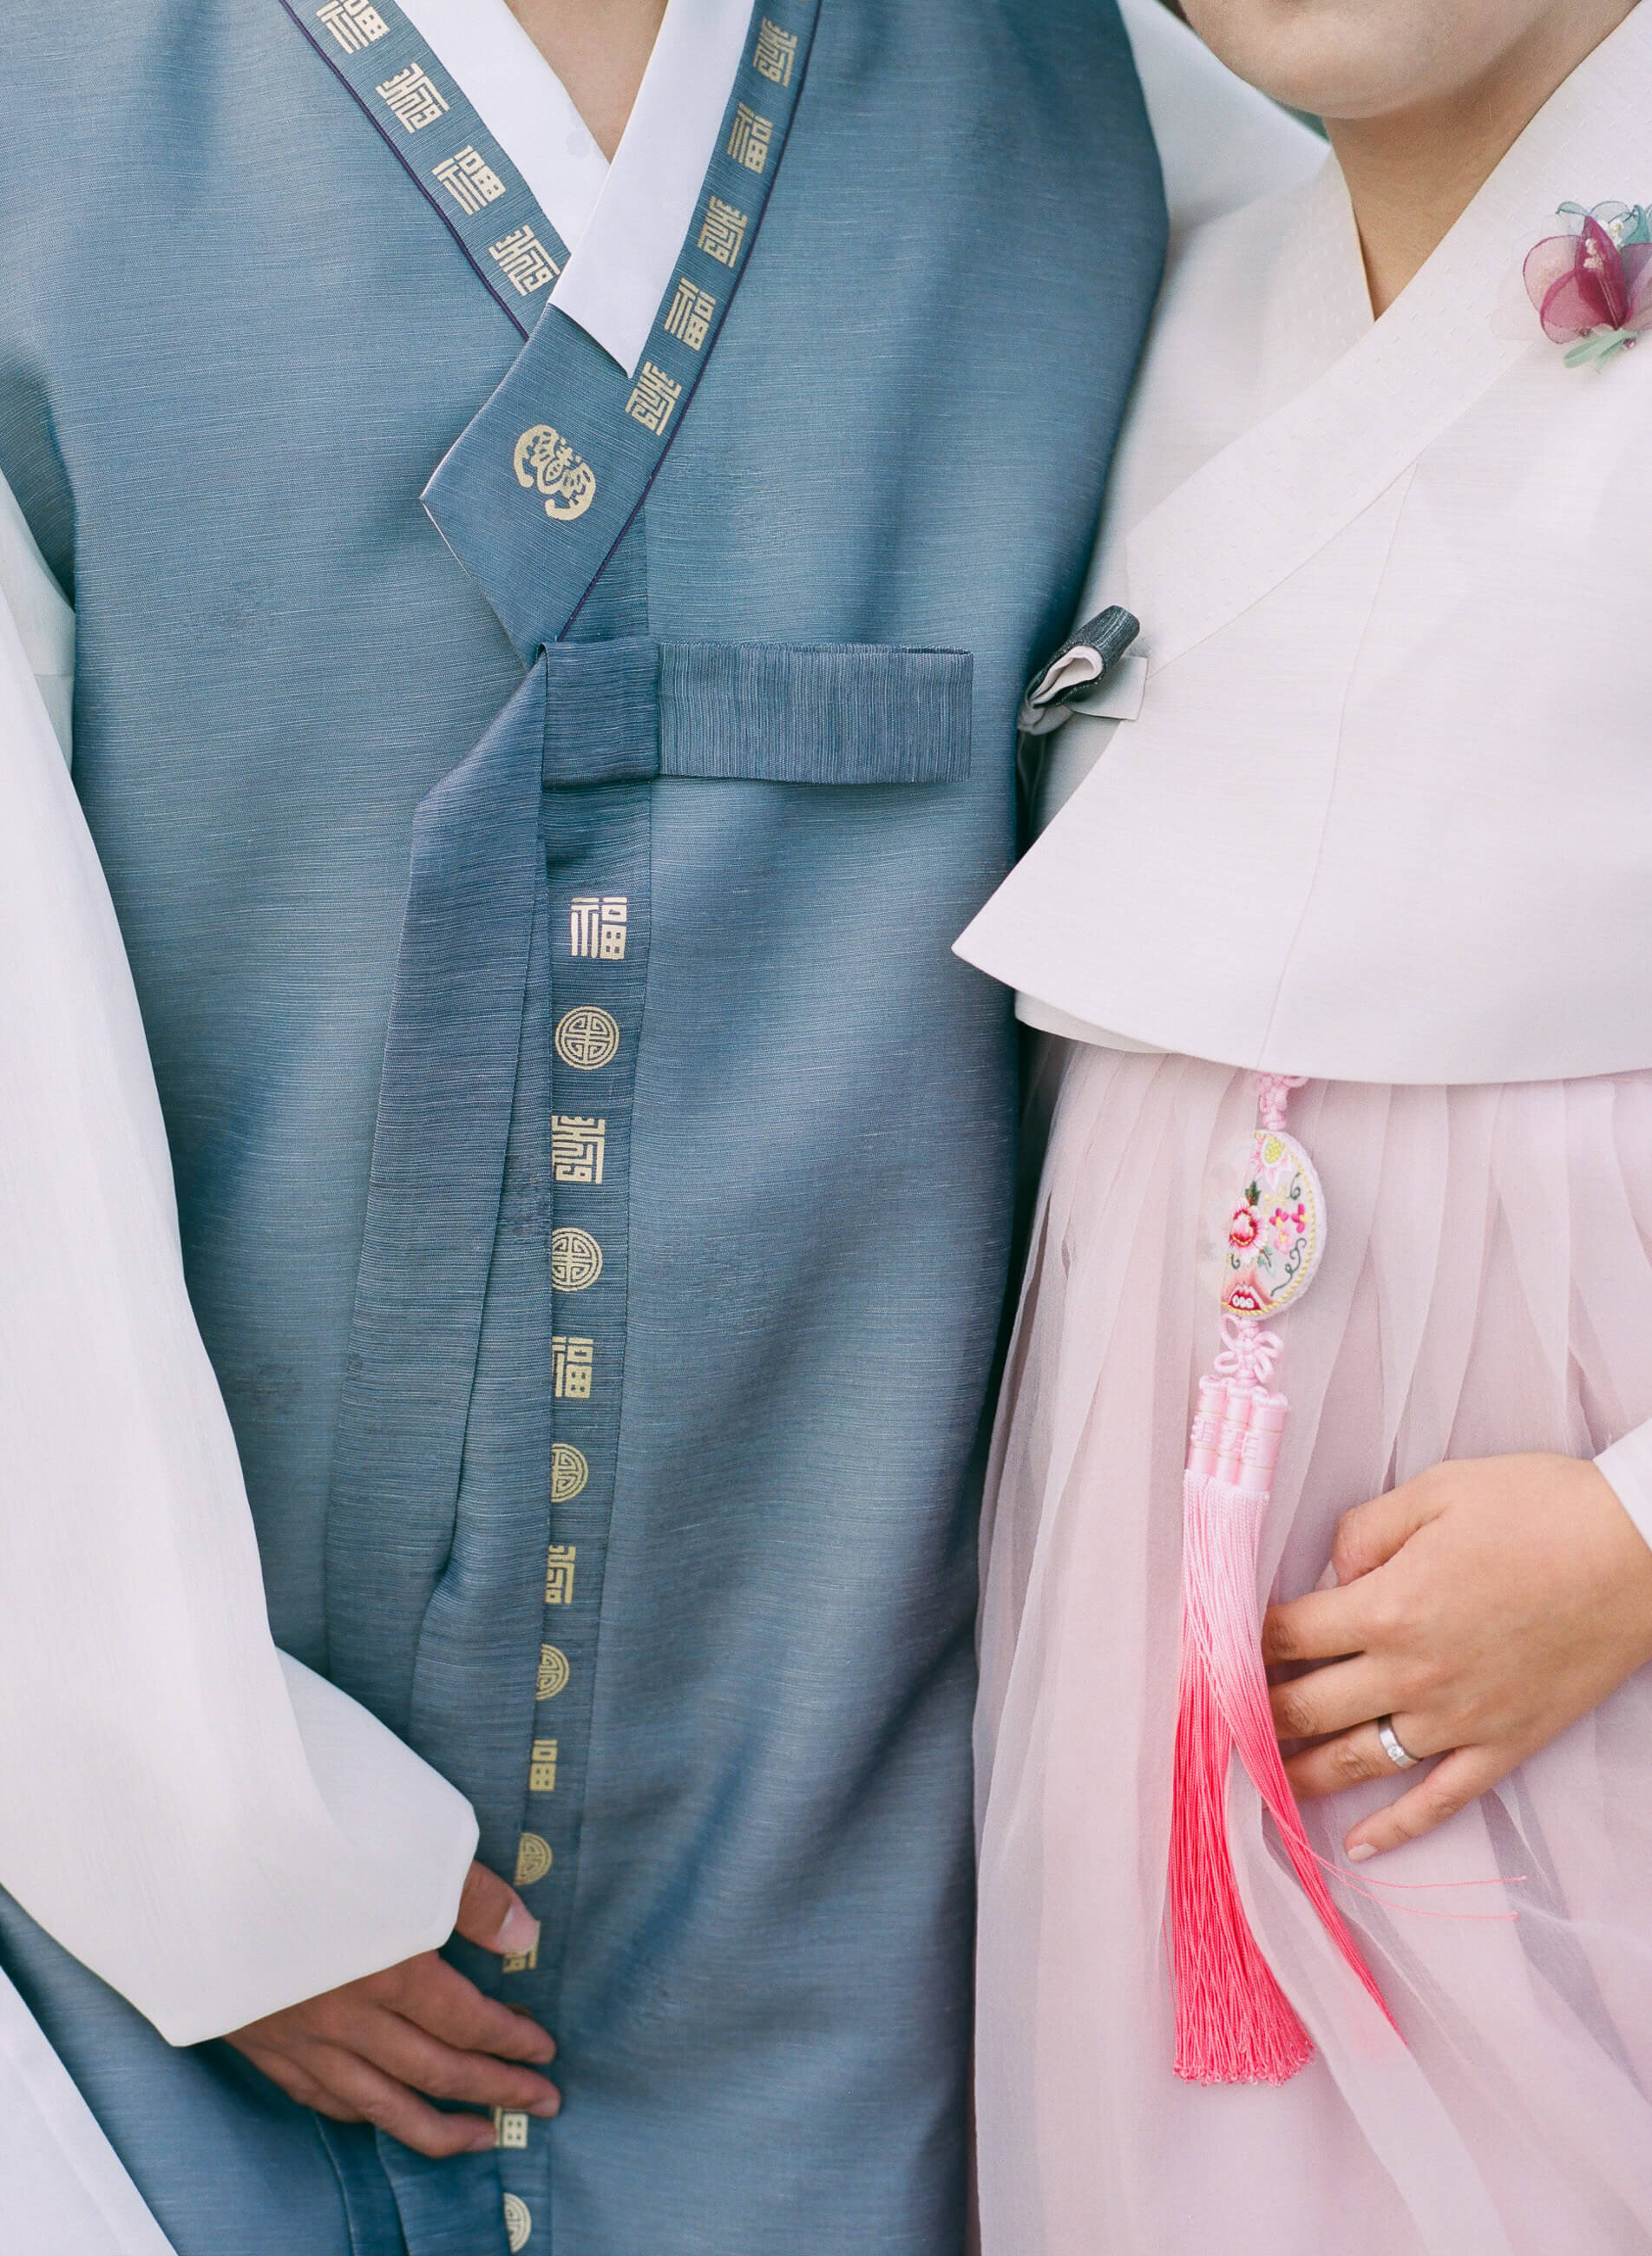 korean-friendship-bell-hanbok-engagement-wedding-photos-21.jpg